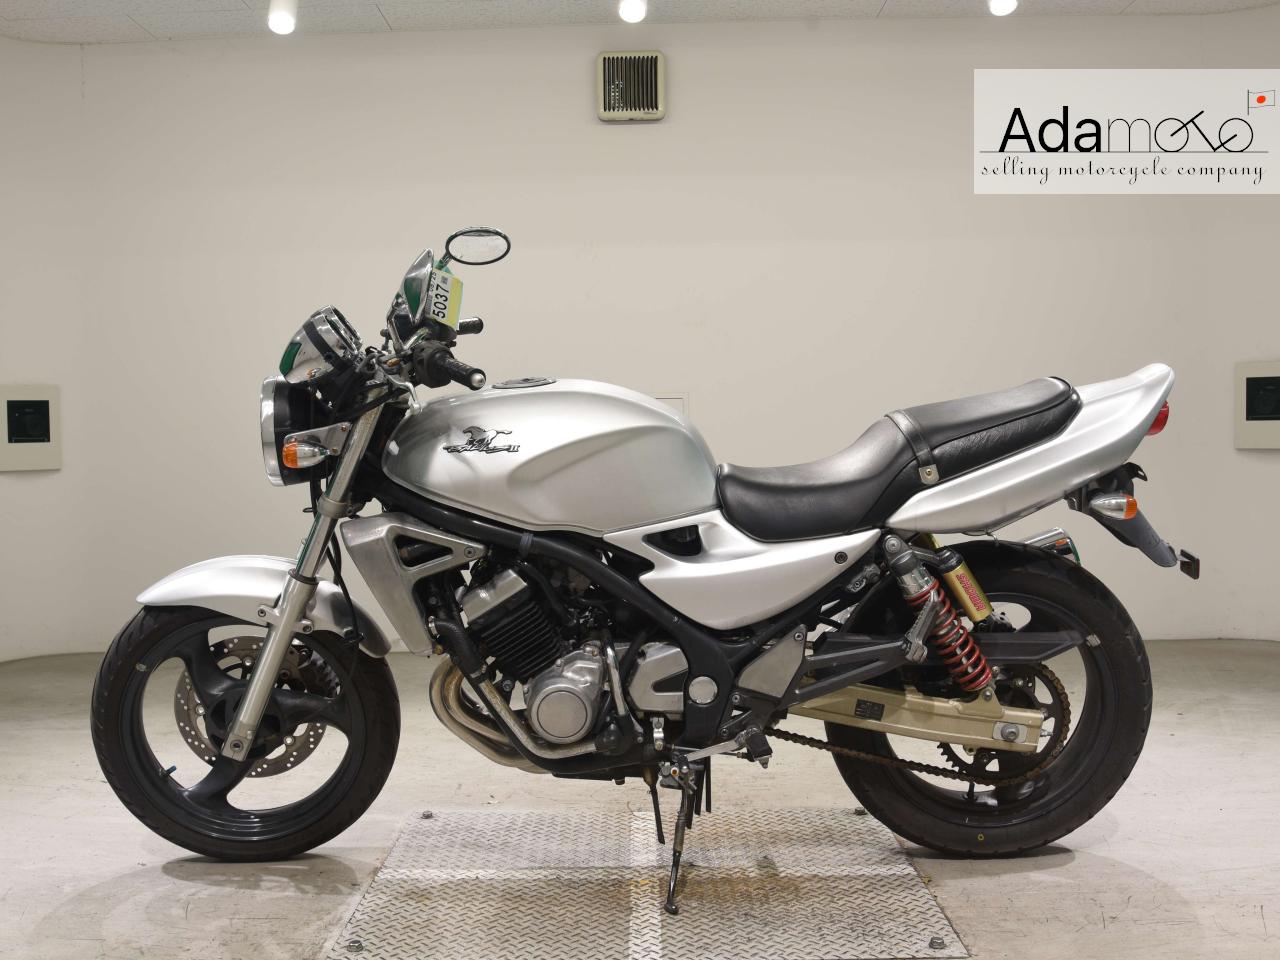 Suzuki GSX250FX - Adamoto - Motorcycles from Japan